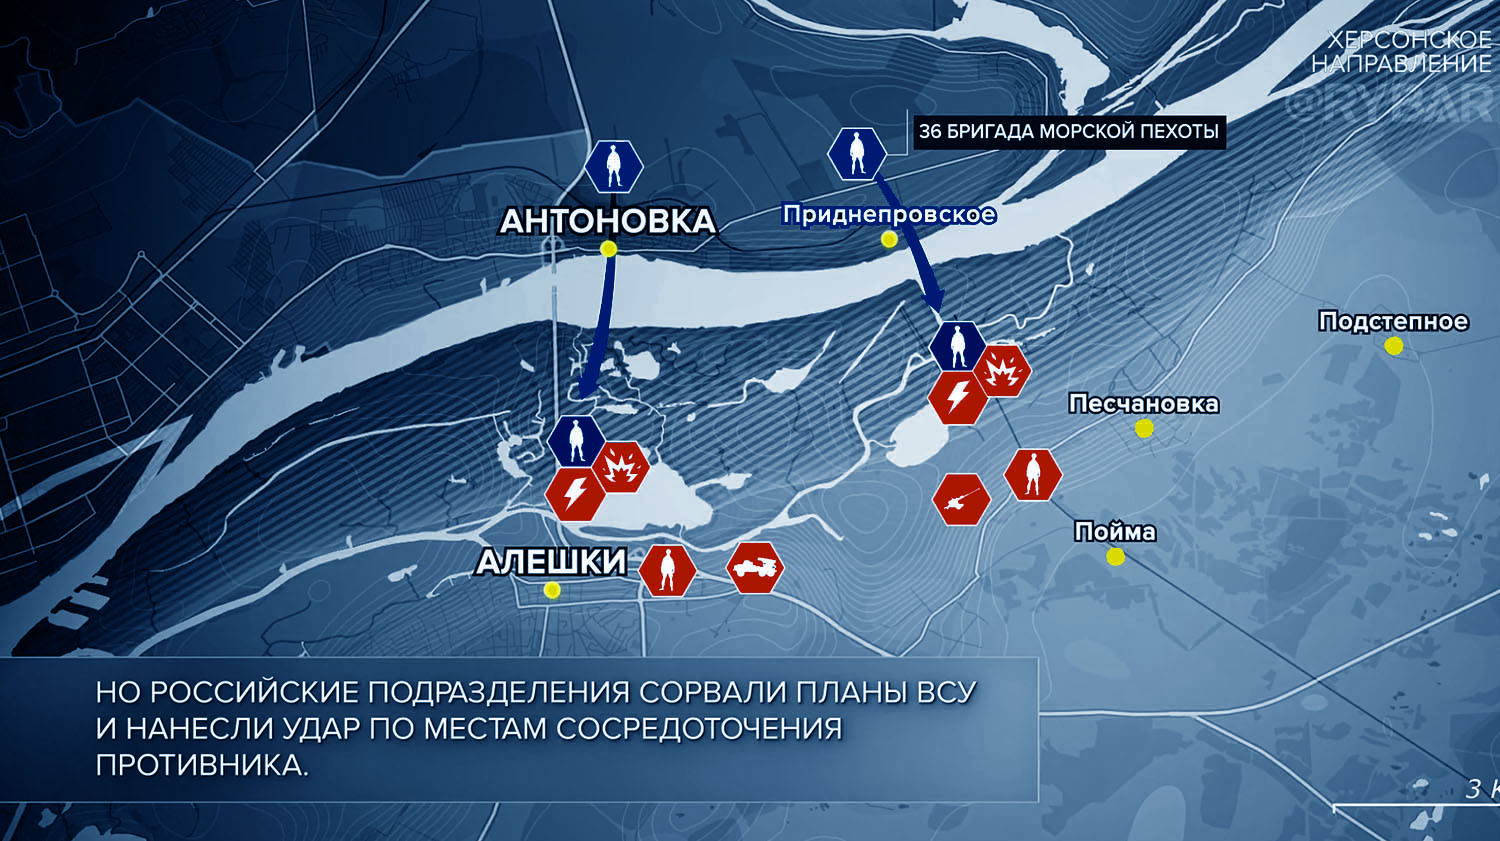 Карта боевых действий на Украине, Херсонское направление, на 16.11.23 г. Карта СВО от «Рыбарь».